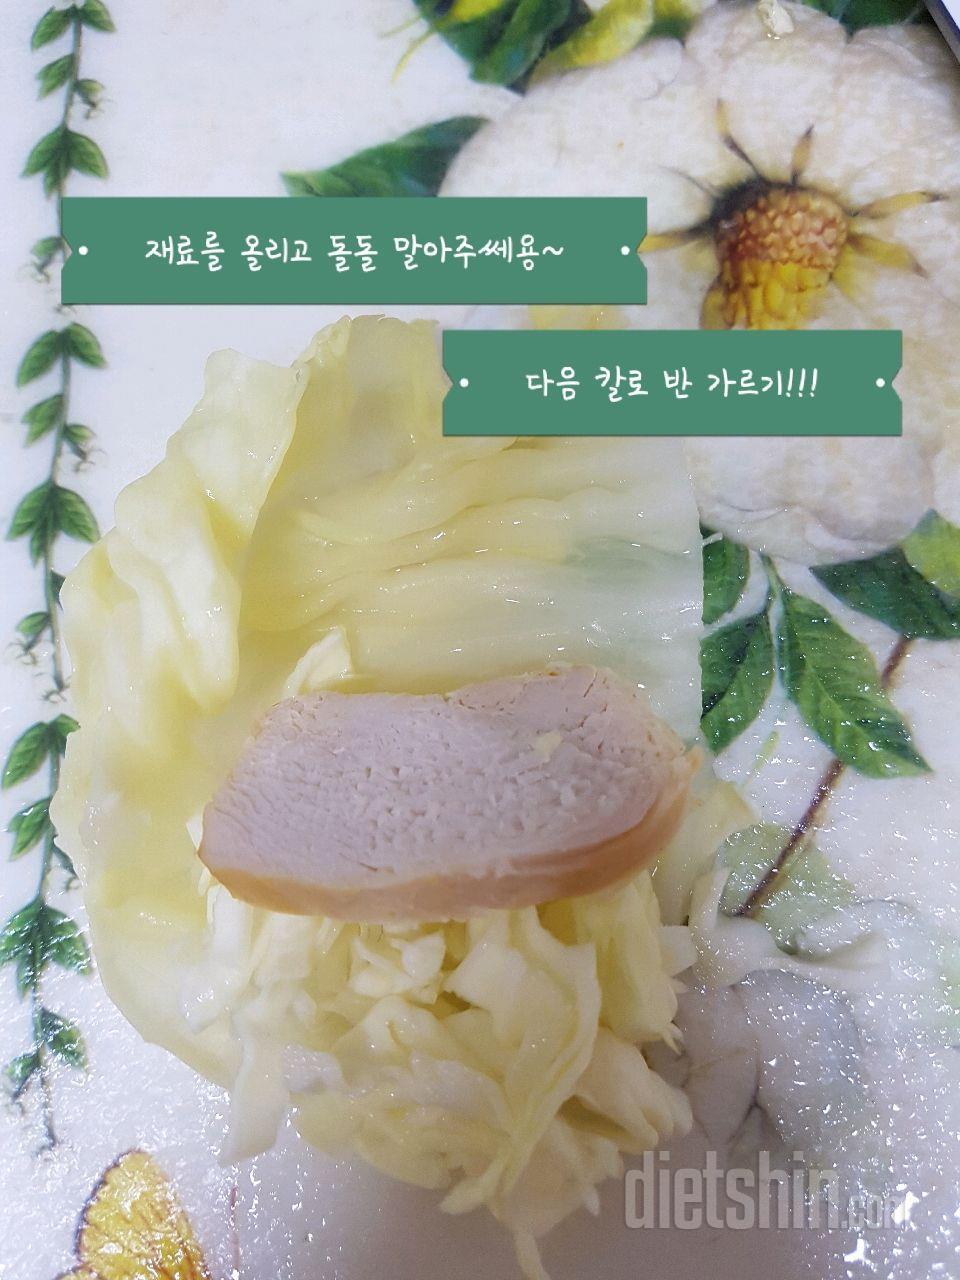 [공모전1] 양배추 feat. 닭가슴살